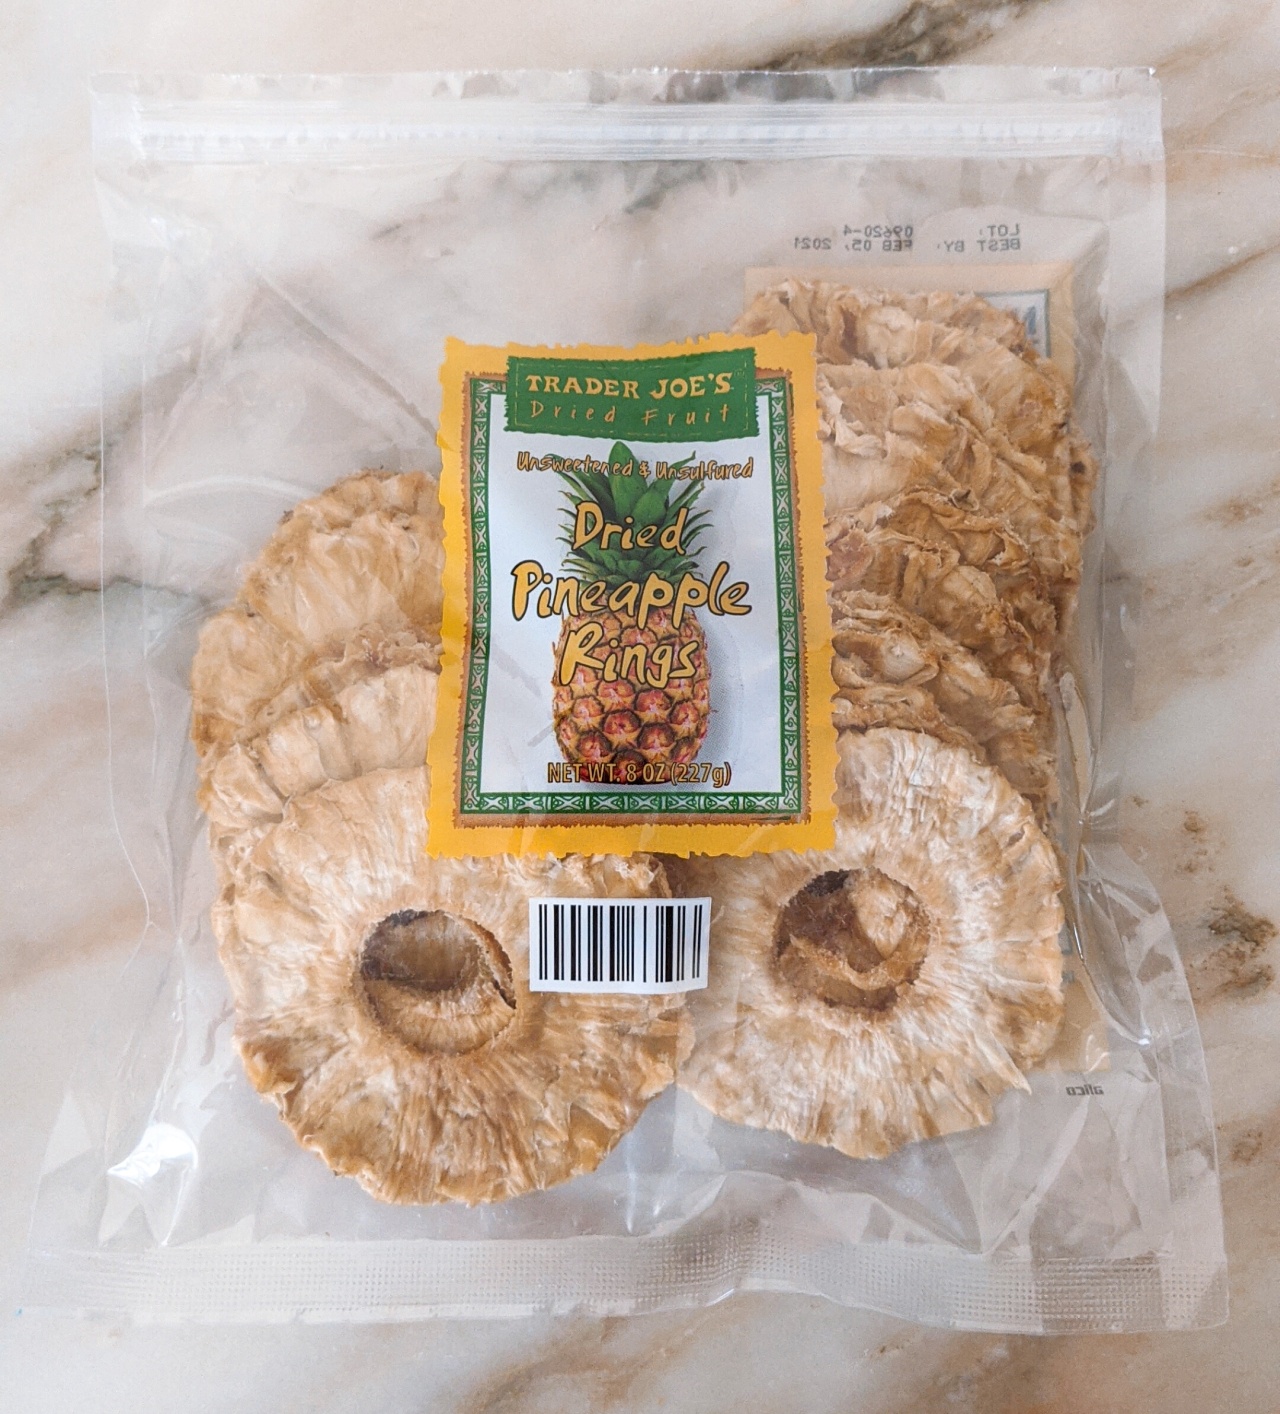 Trader Joe's Dried Pineapple Rings